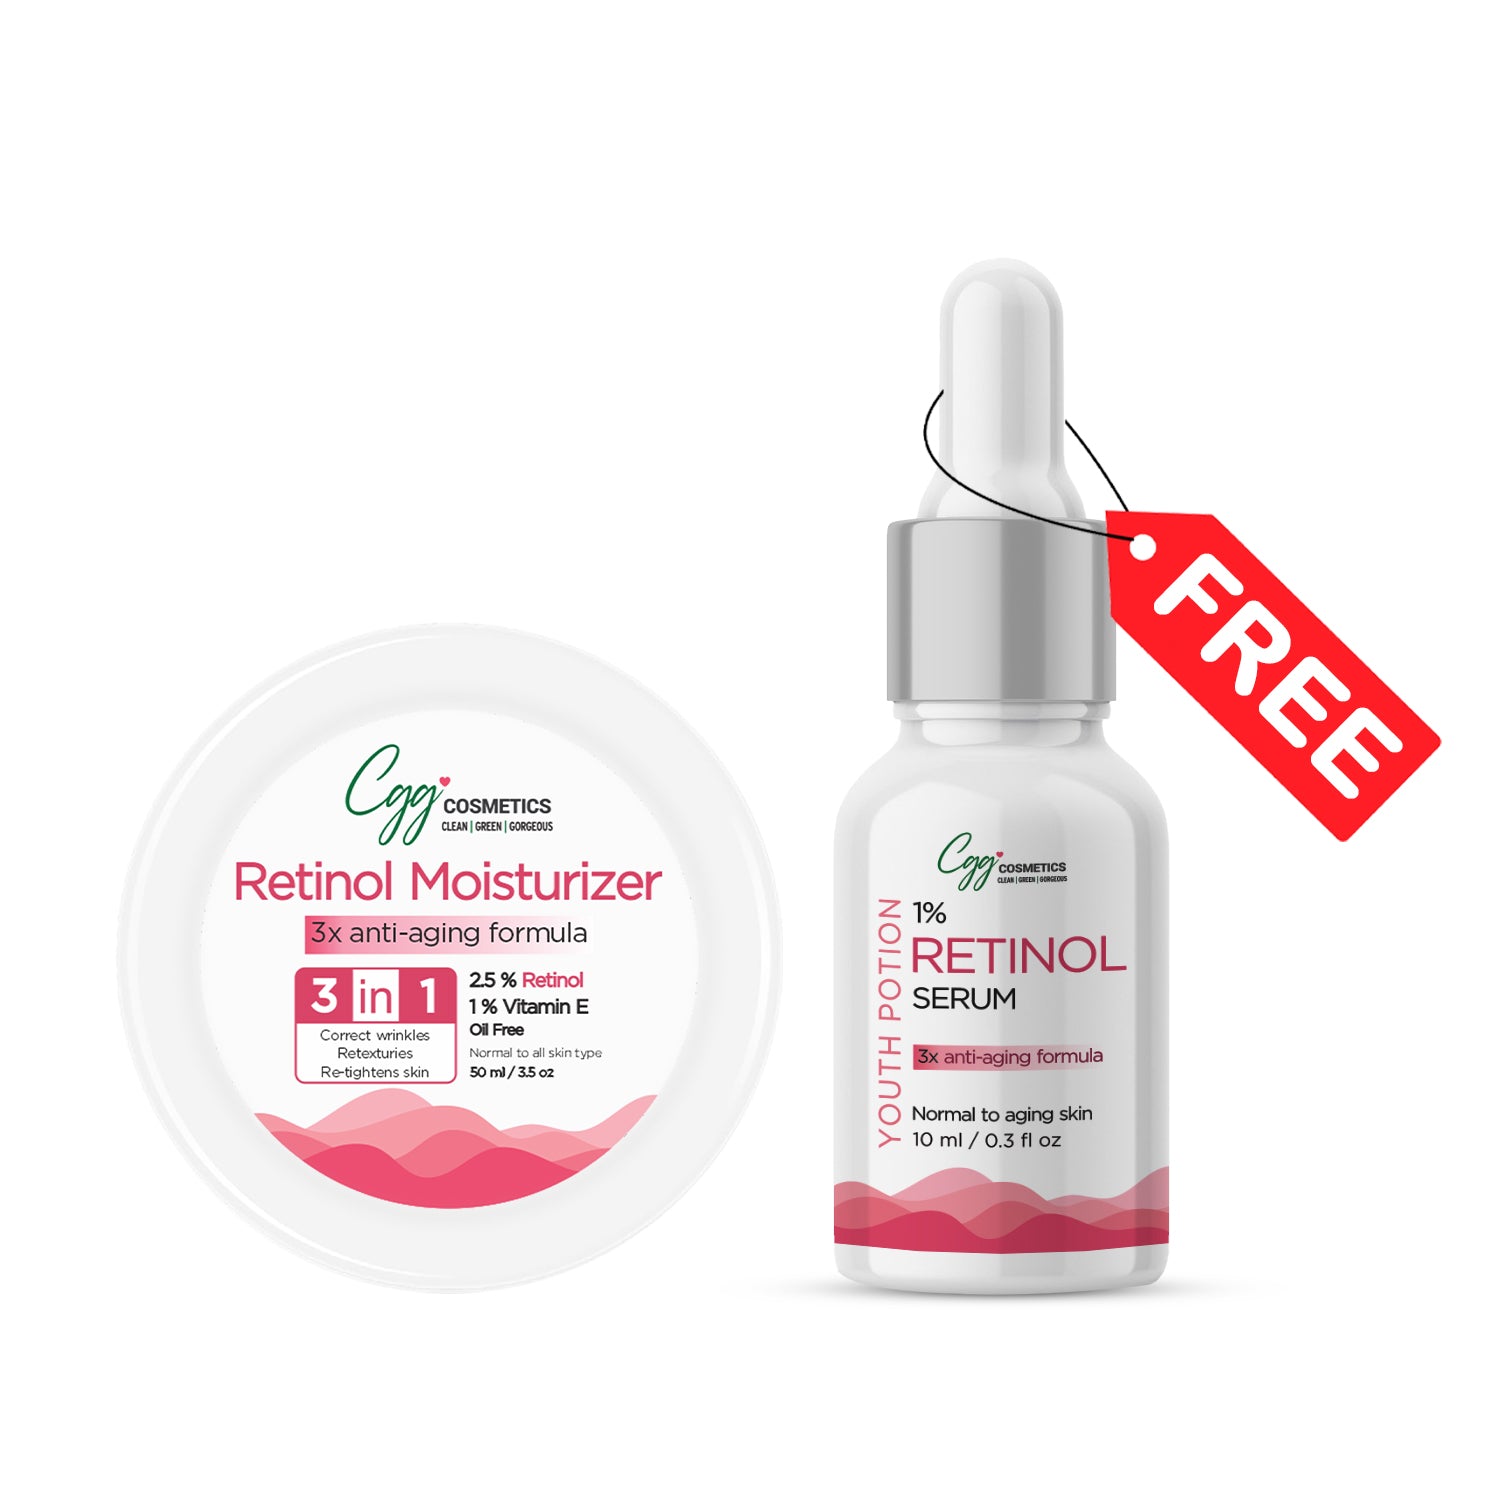 CGG Cosmetics Retinol Moisturizer 50ml + FREE 10ml Sample of 1% Retinol Serum